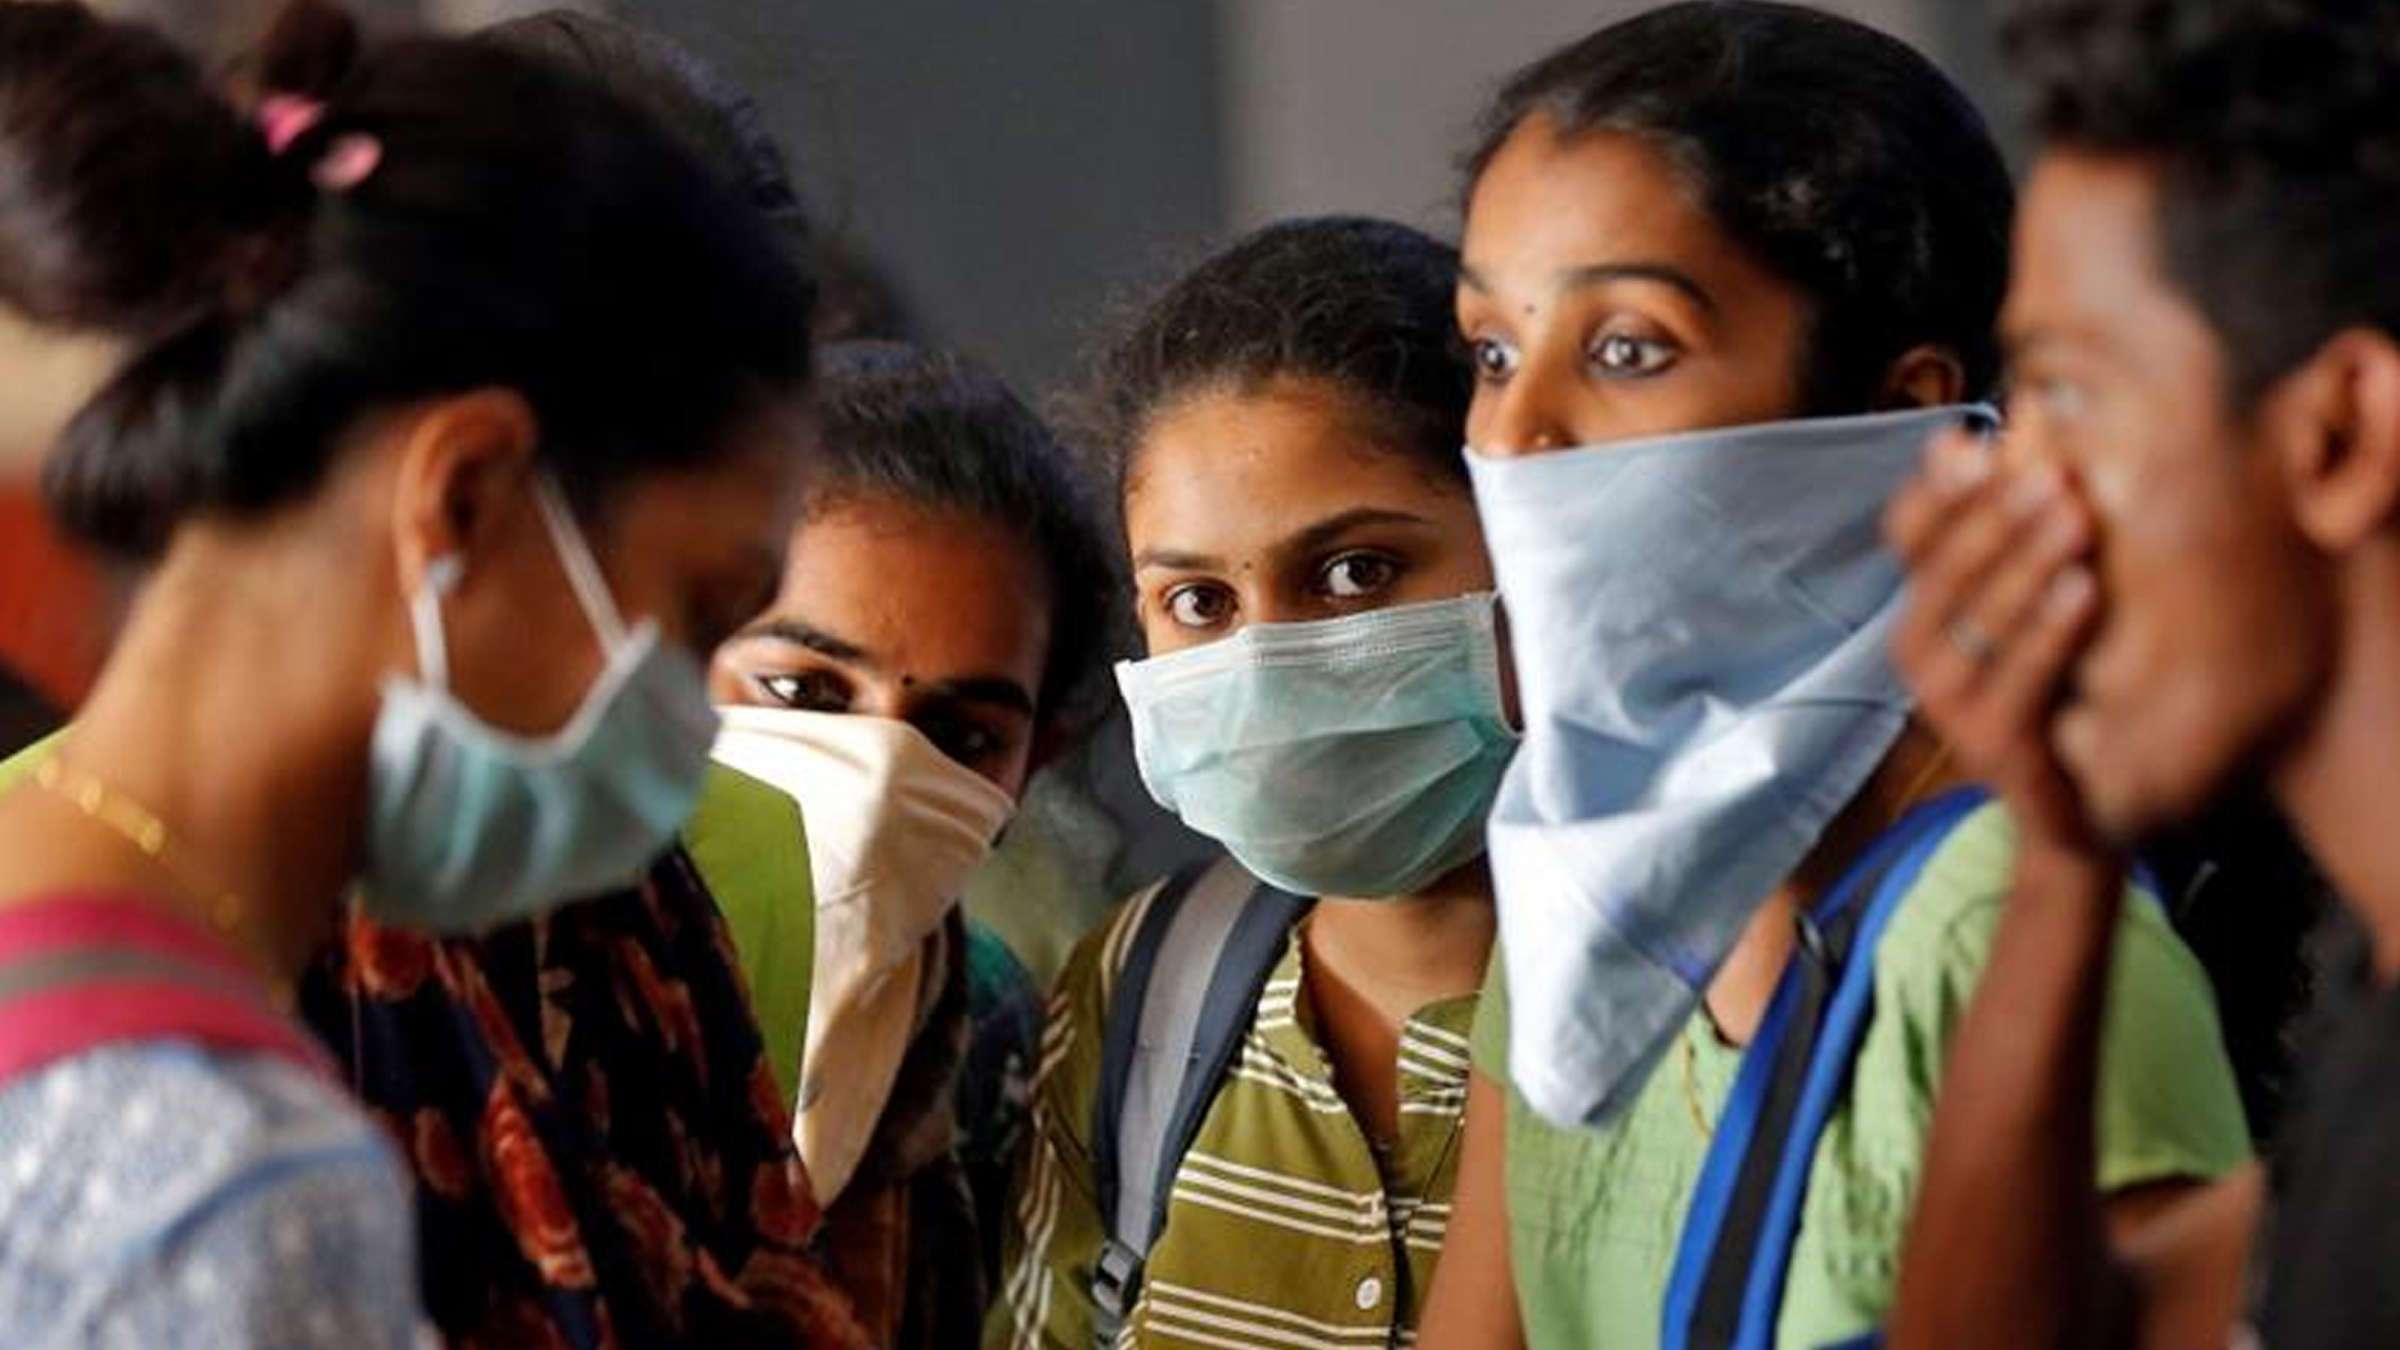 निजी सुरक्षा उपकरण की मांग को लेकर दिल्ली नर्स यूनियन ने काम रोकने की  चेतावनी दी